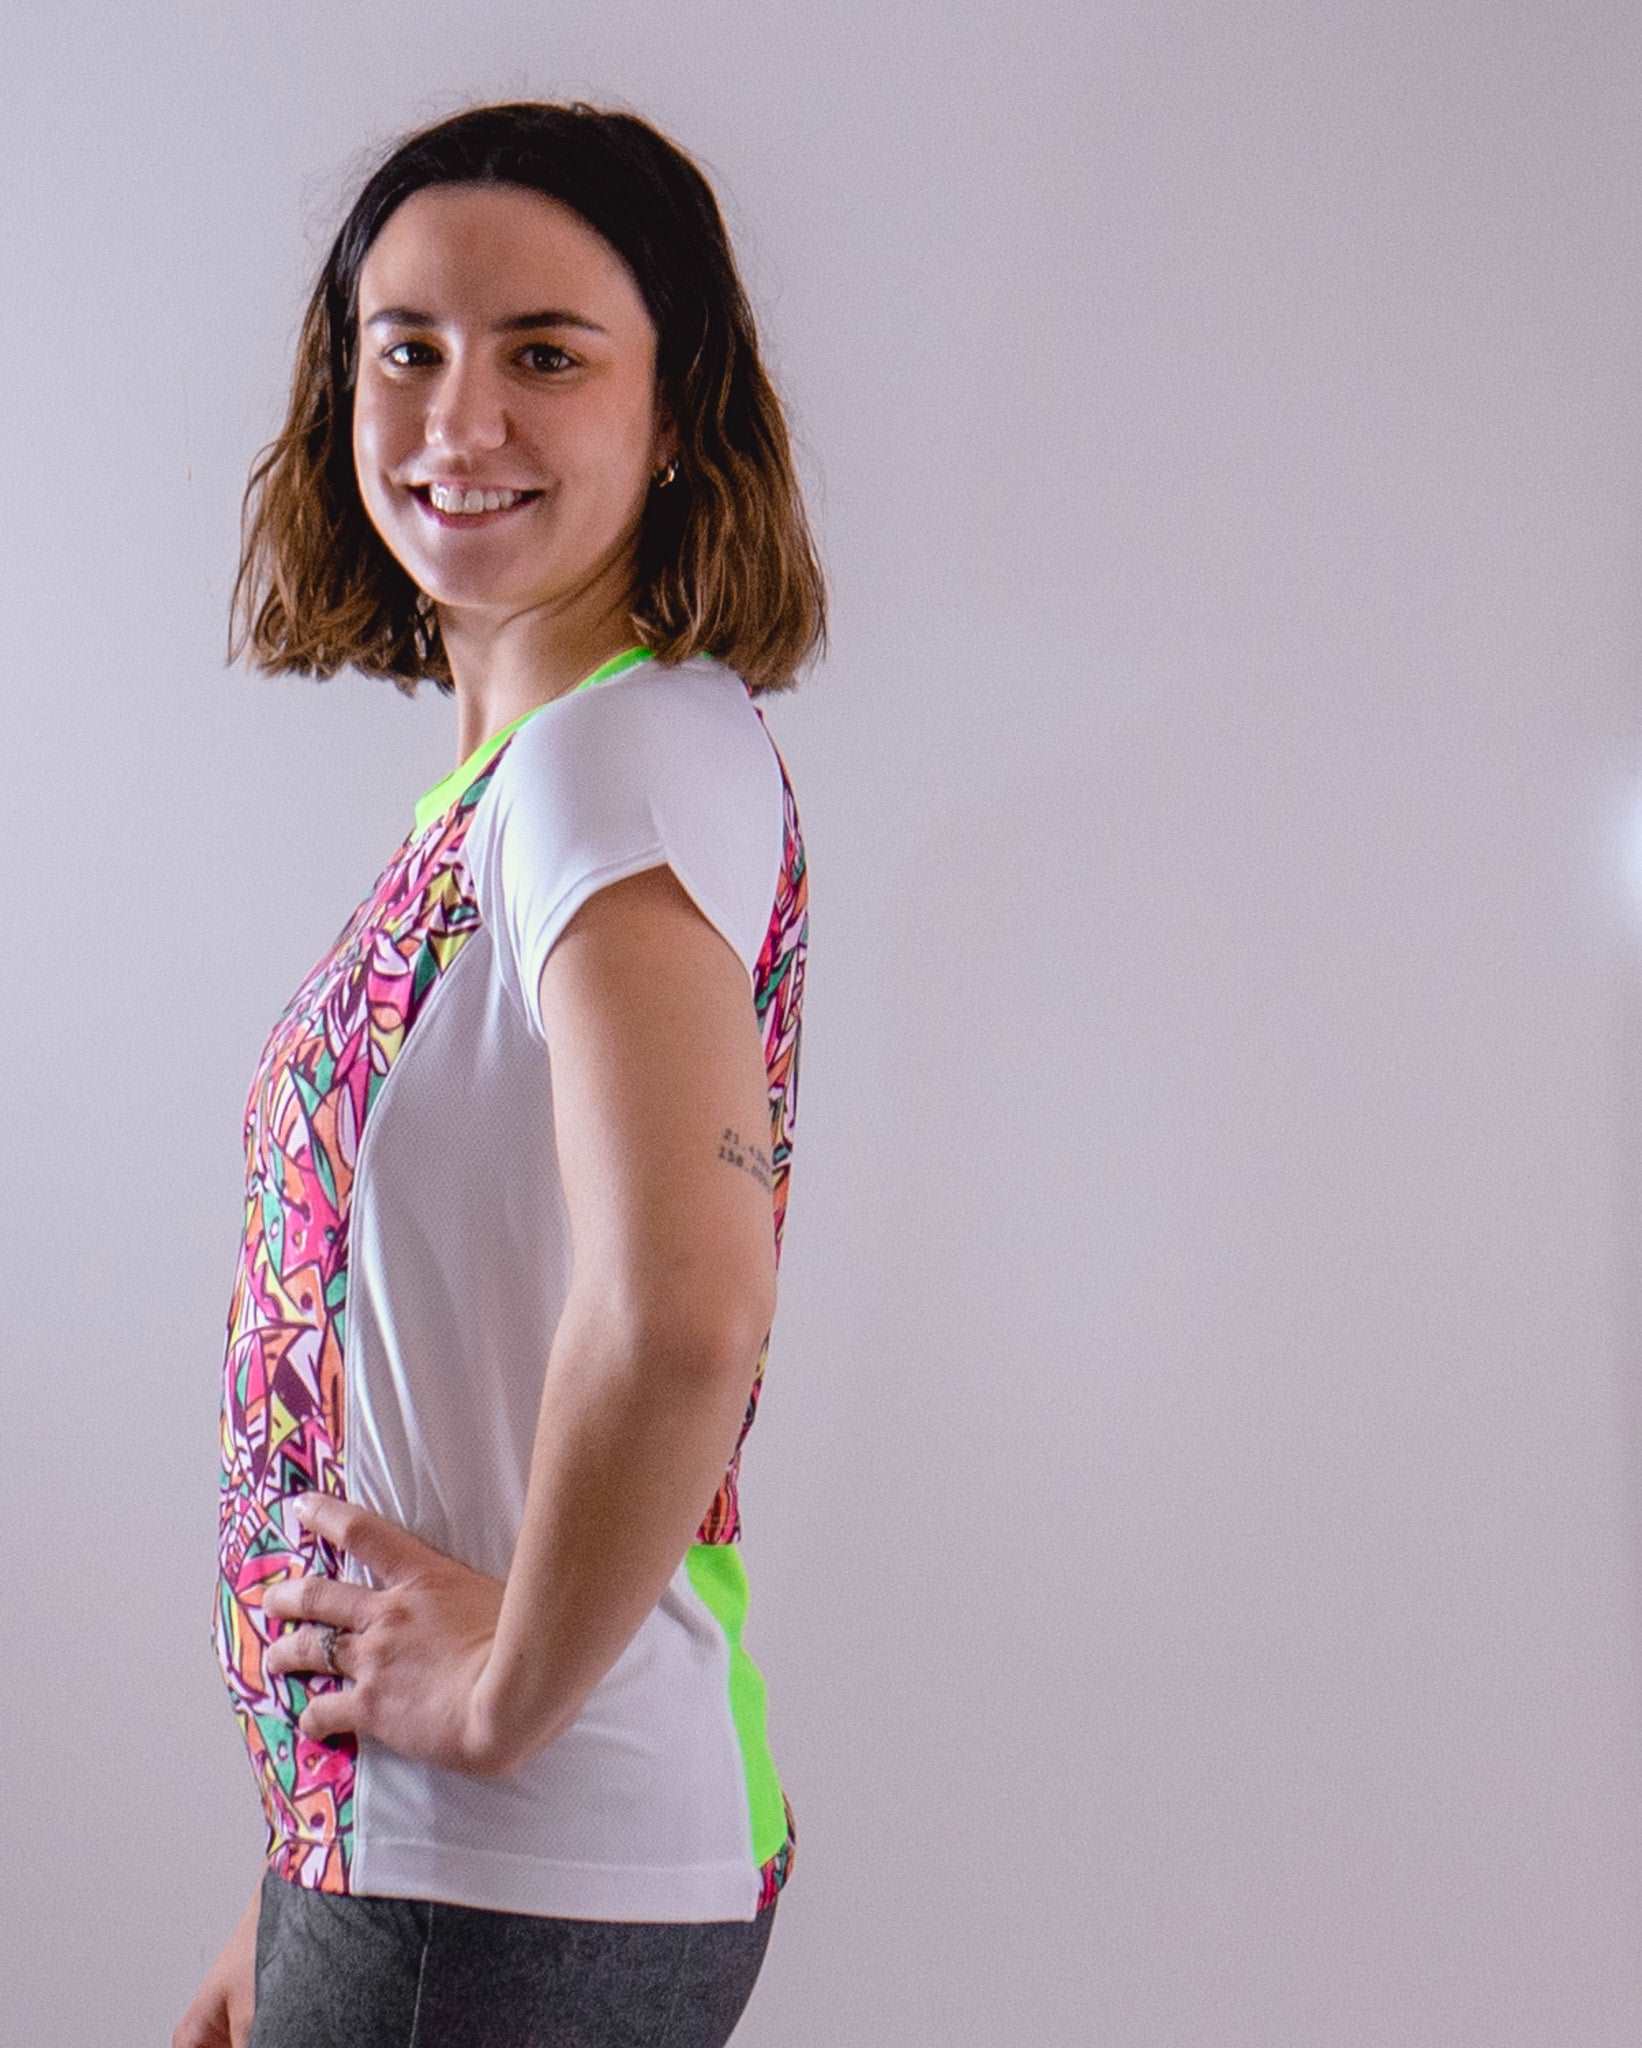 Moxie Tee Jersey Fifi - Moxie Cycling:  Bike Jerseys, Bike Shorts & Bike Pants Made for Women